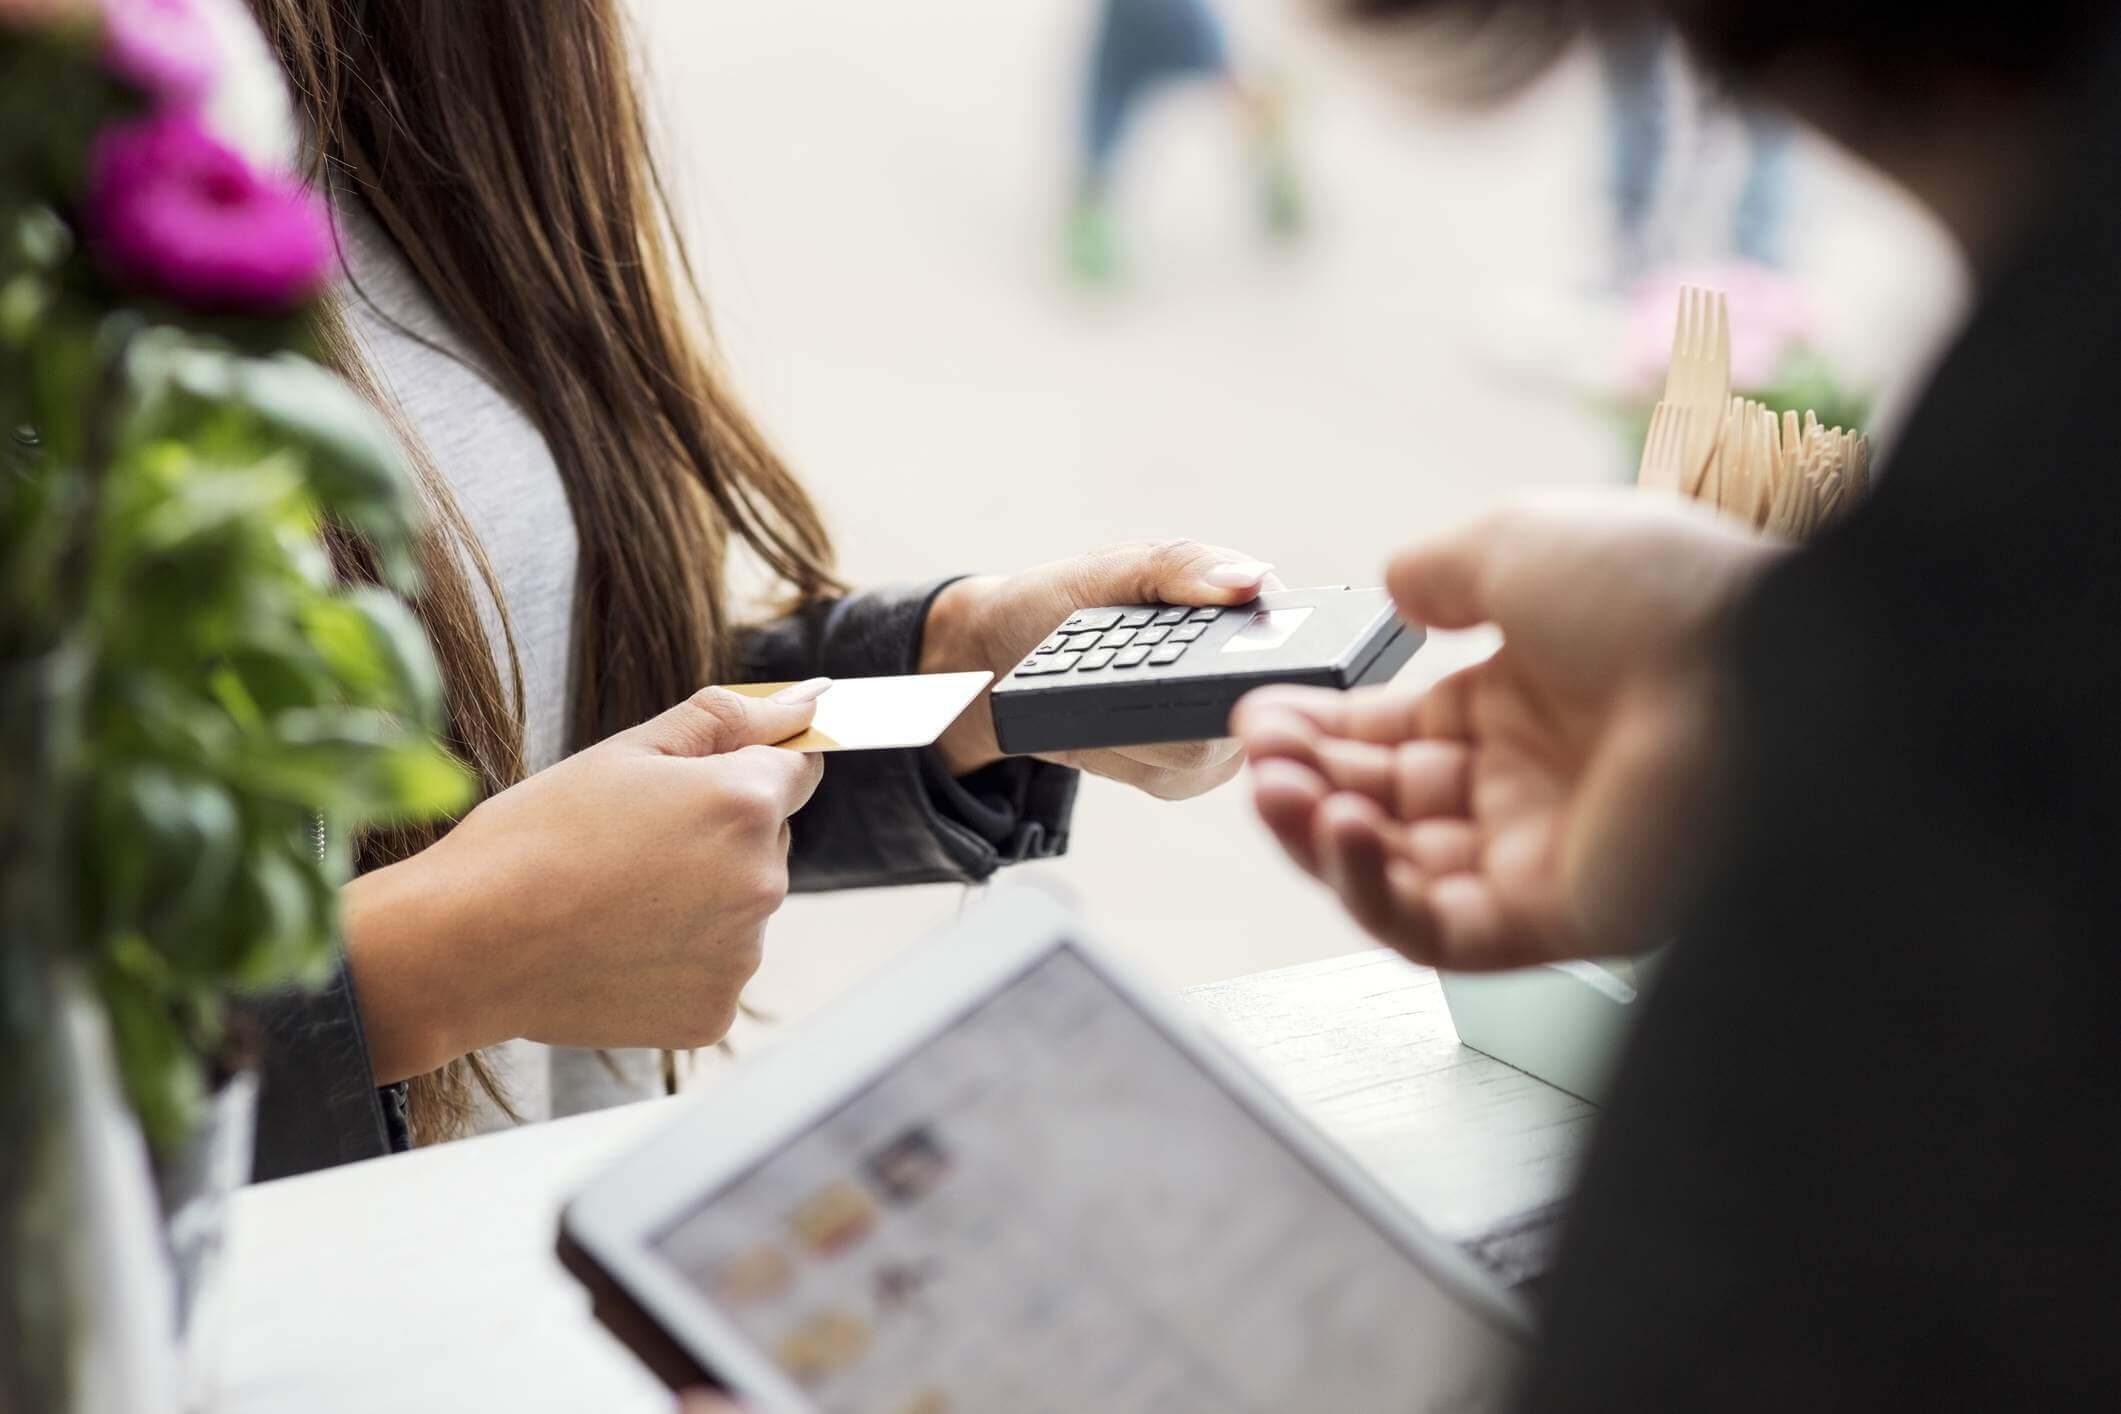 Kartu Kredit Untuk Belanja - Tips Memilih Manfaat Kartu Kredit Berdasarkan Kegunaannya